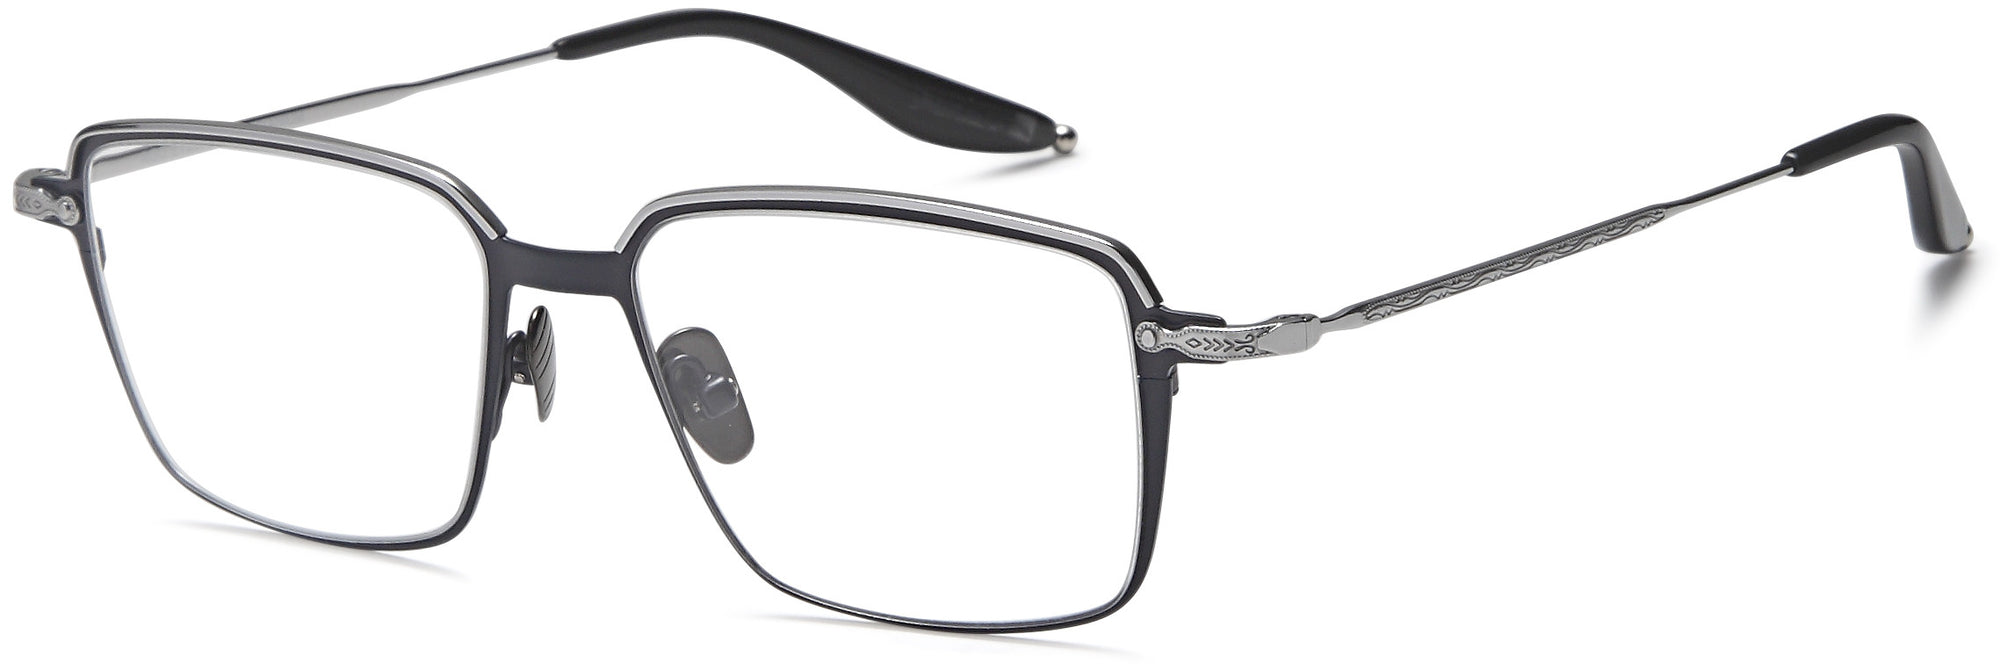 AGO Eyeglasses AGOT704 - Go-Readers.com